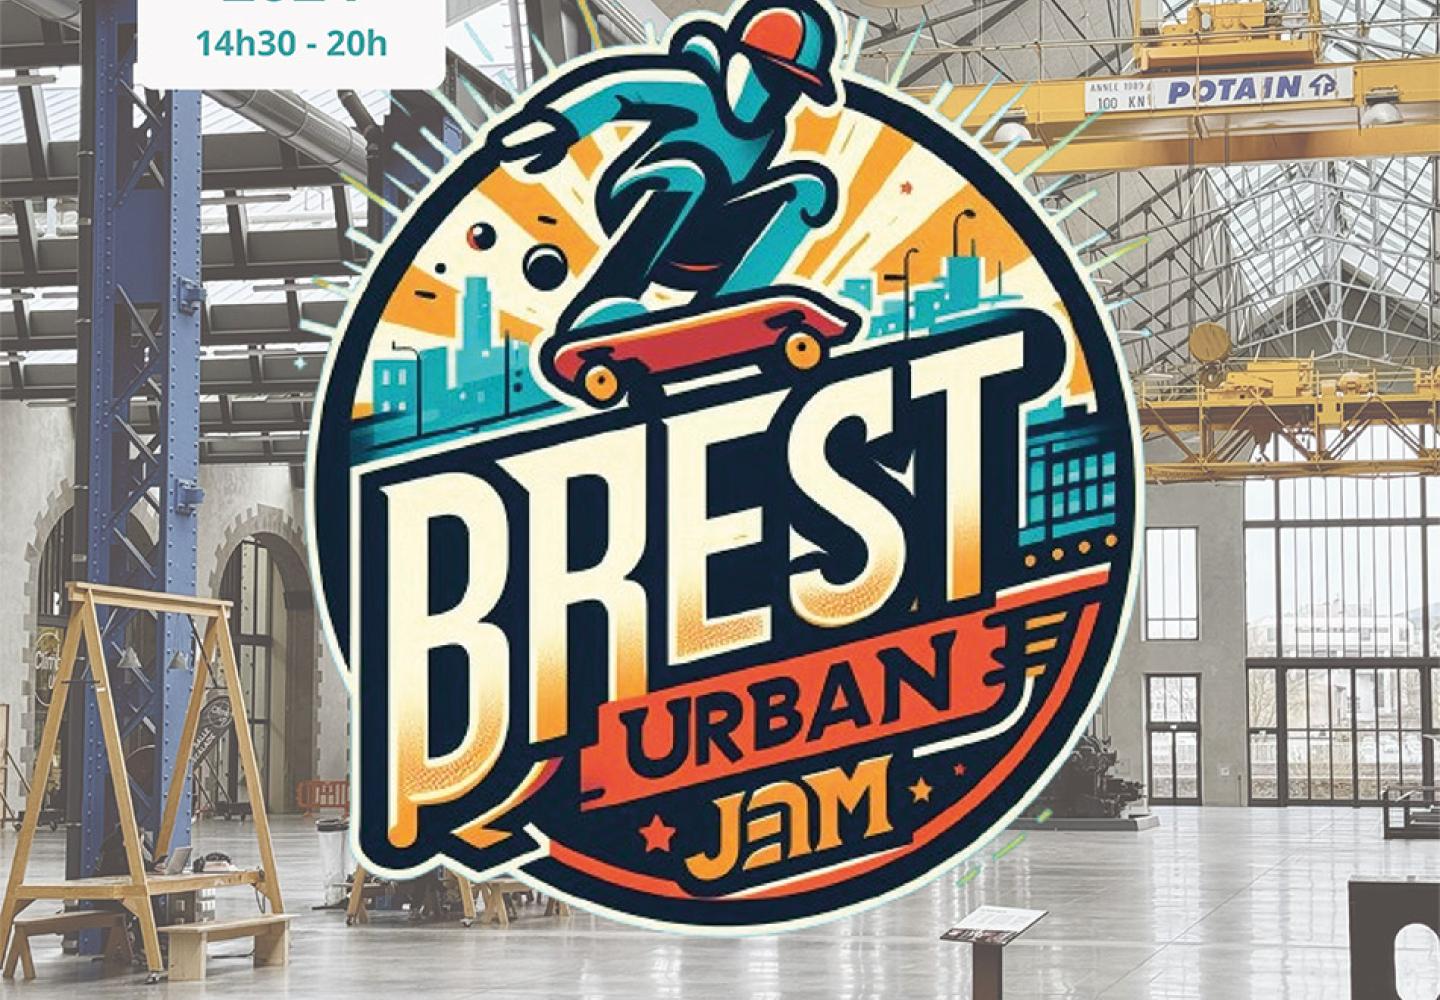 Brest Urban Jam